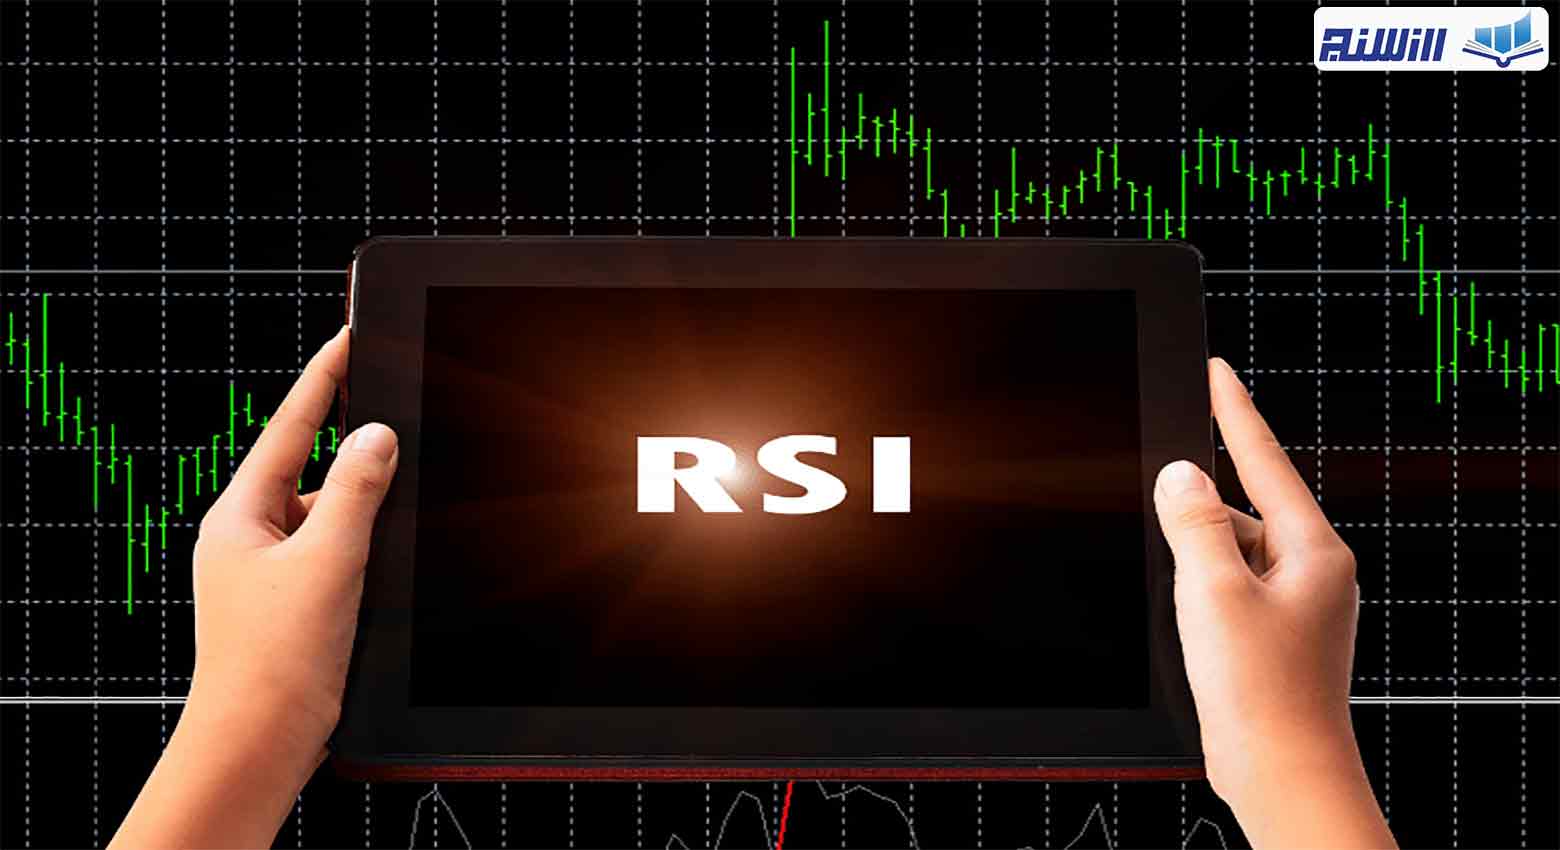 اندیکاتور RSI چیست؟